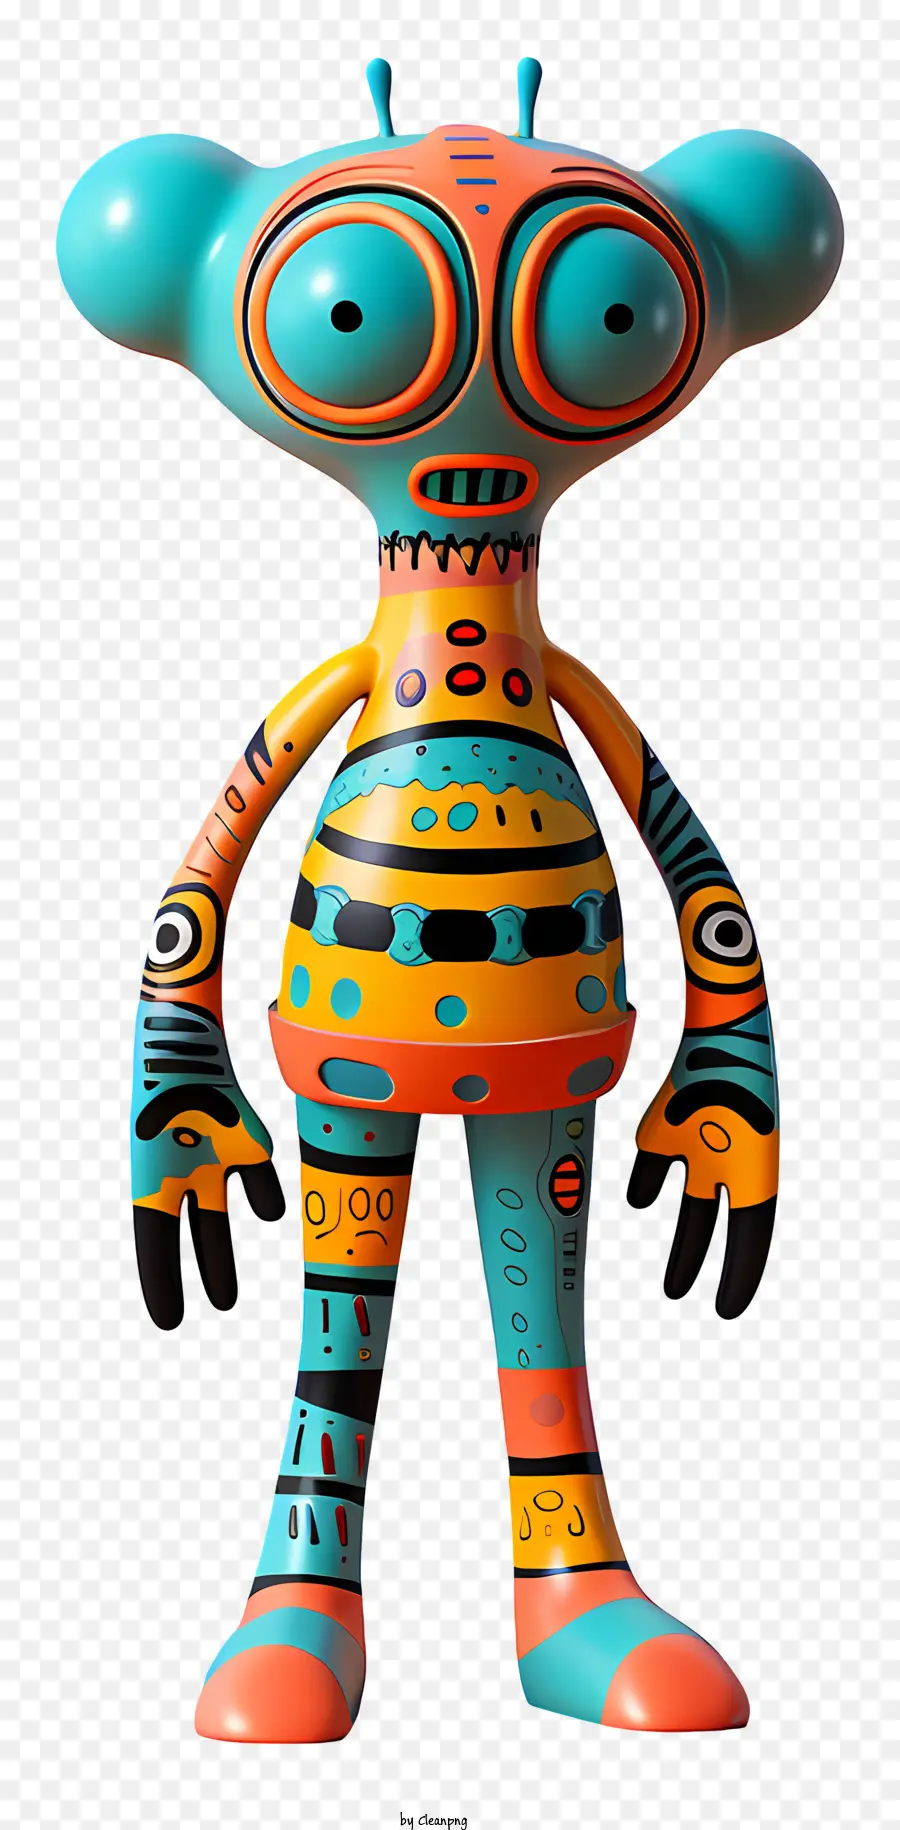 Alien Hominid Creatura aliena Modelli luminosi del corpo colorato testa di grandi dimensioni - Creatura aliena colorata e modellata con testa di grandi dimensioni